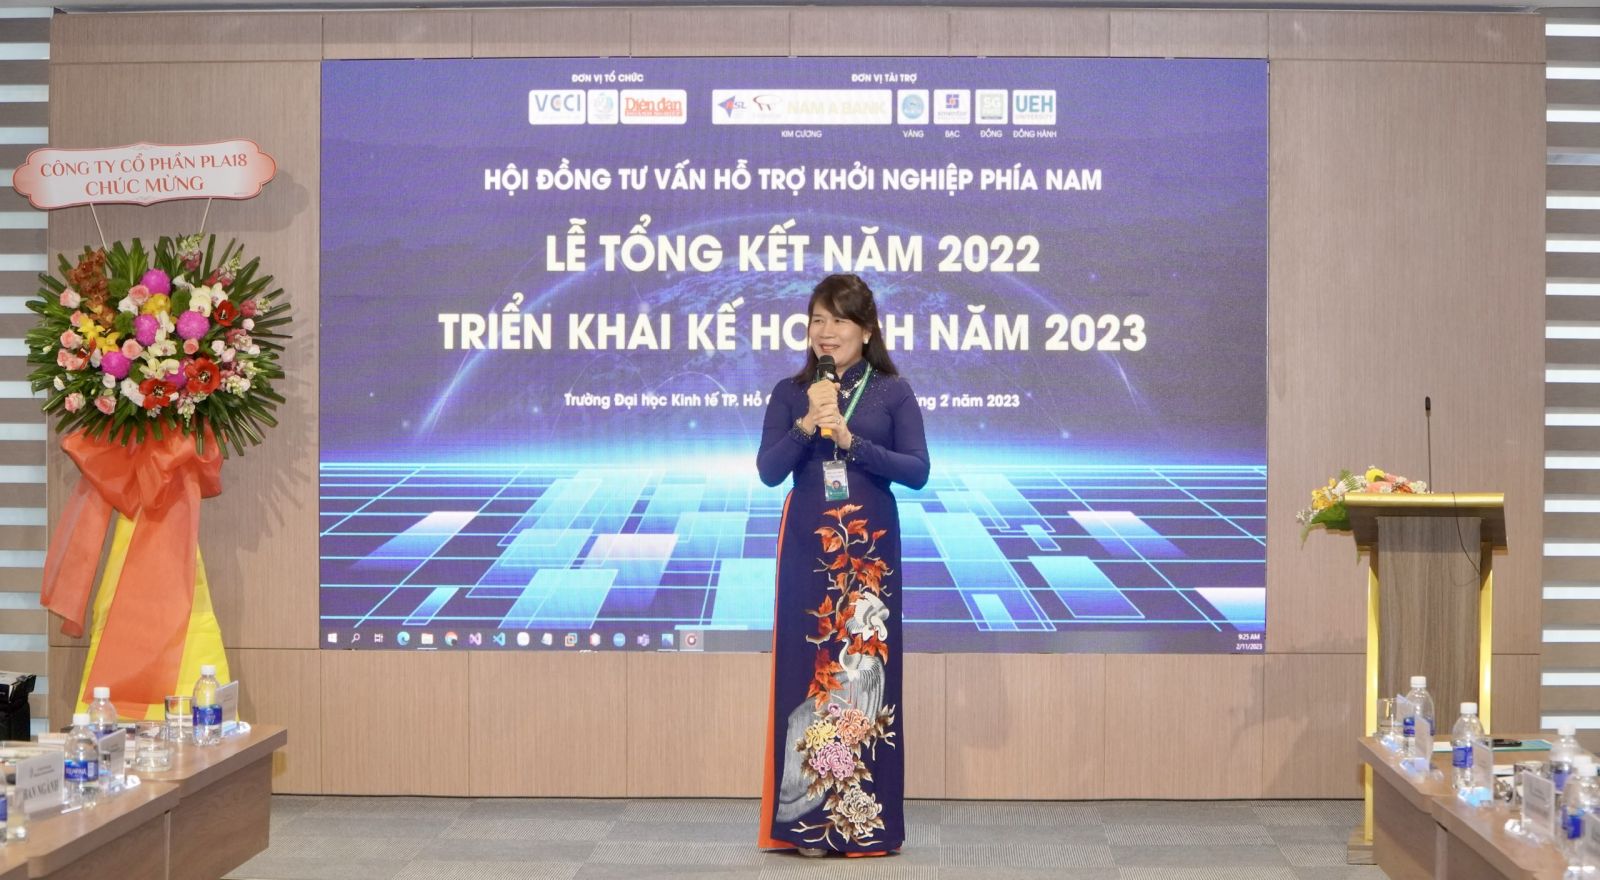 Bà Võ Thị Phương Lan – Chủ tịch Hội đồng Tư vấn và Hỗ trợ khởi nghiệp quốc gia phía Nam chia sẻ về những hoạt động của Hội đồng trong năm 2022.